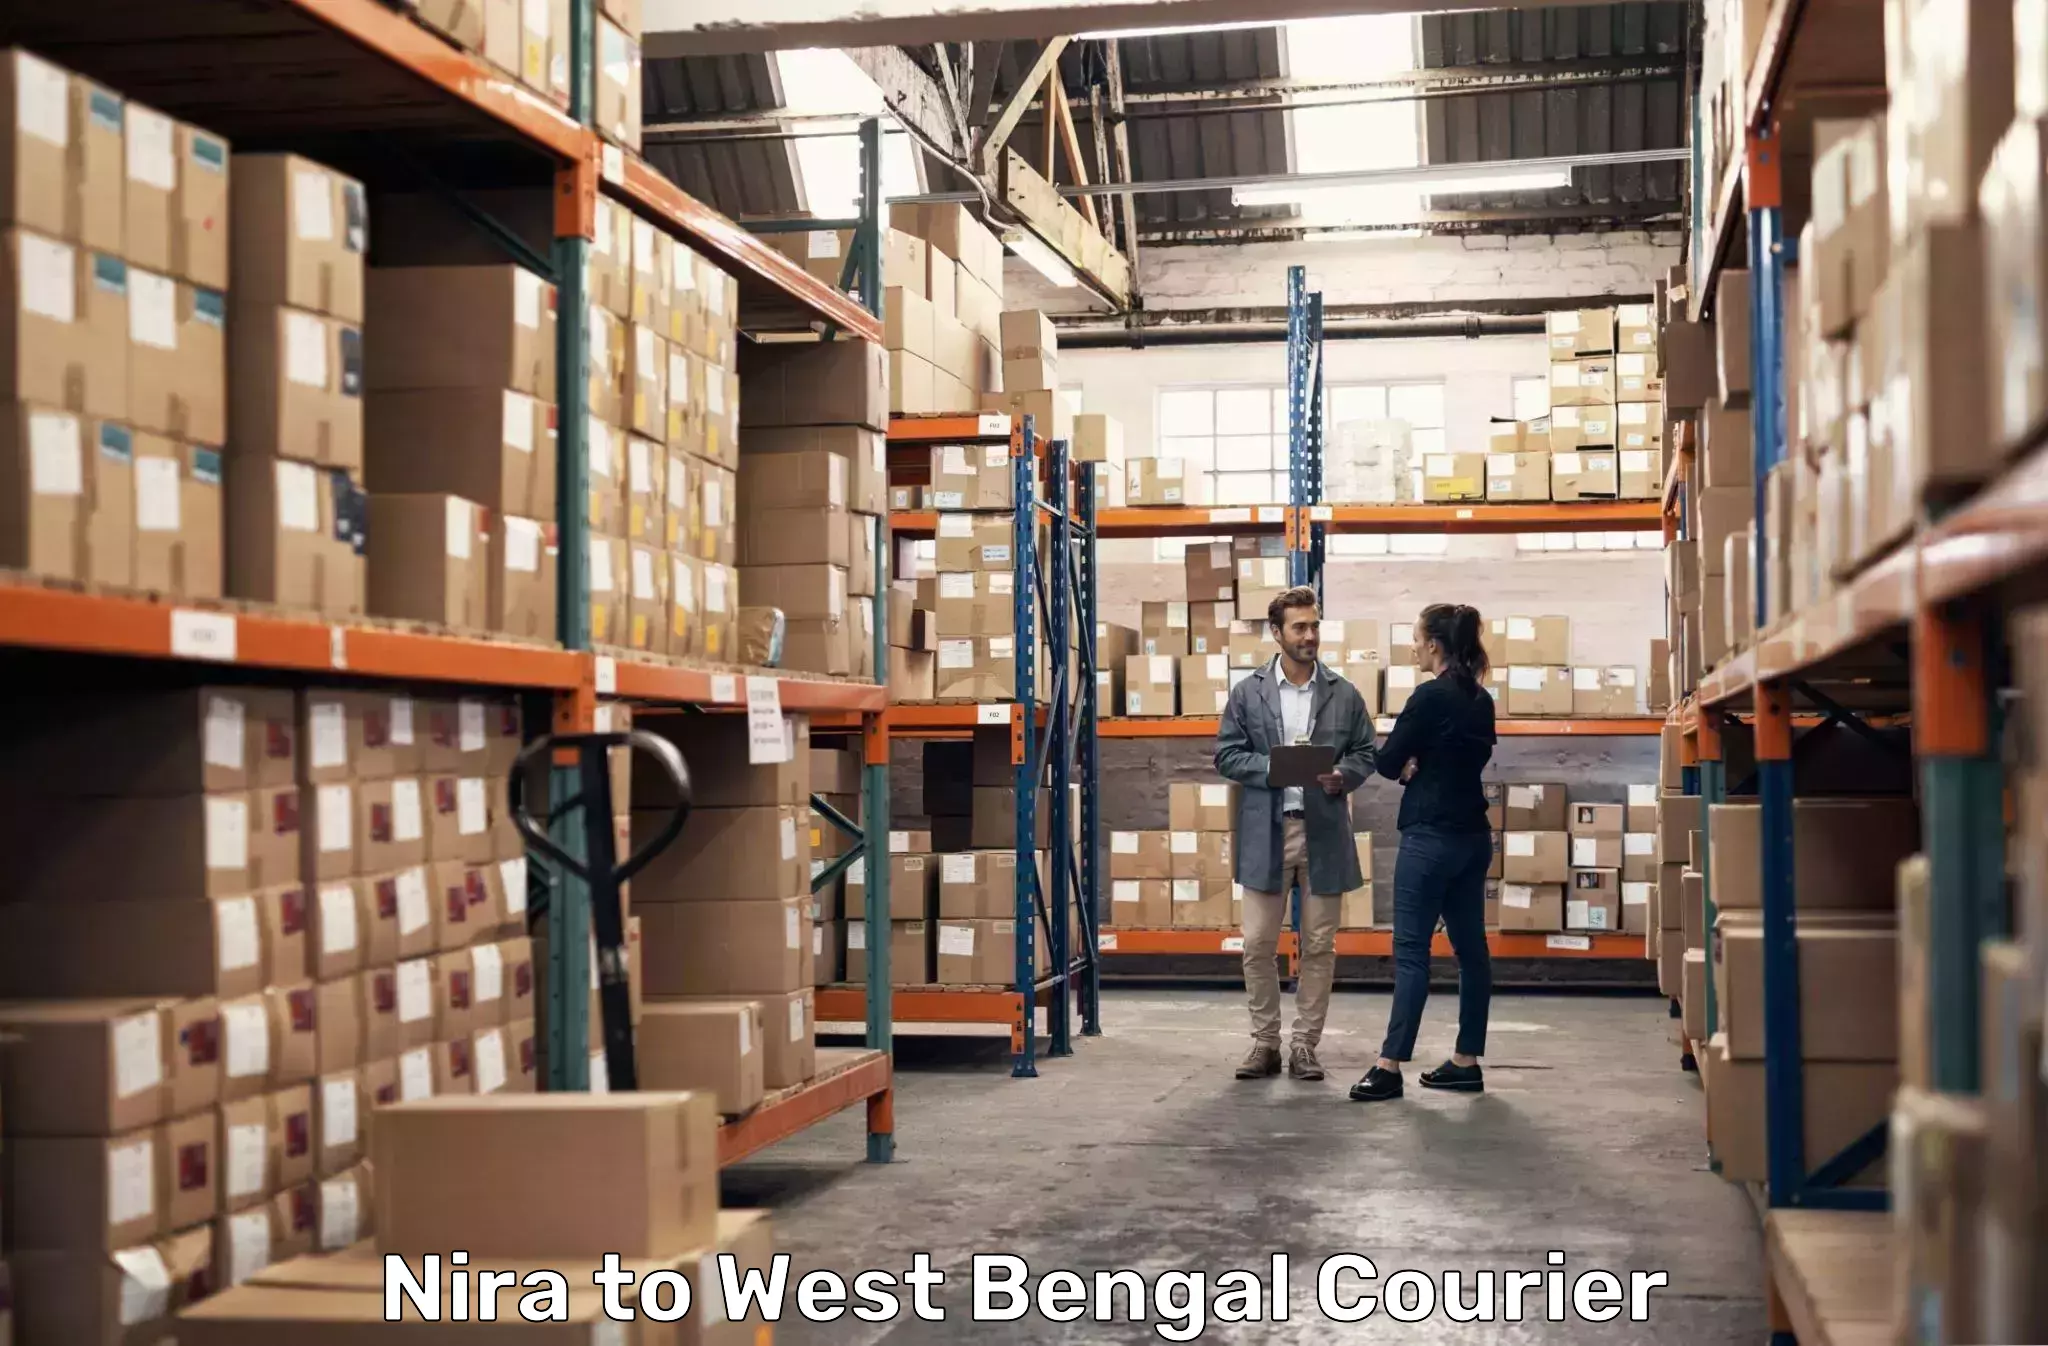 Professional courier handling in Nira to Manglamaro